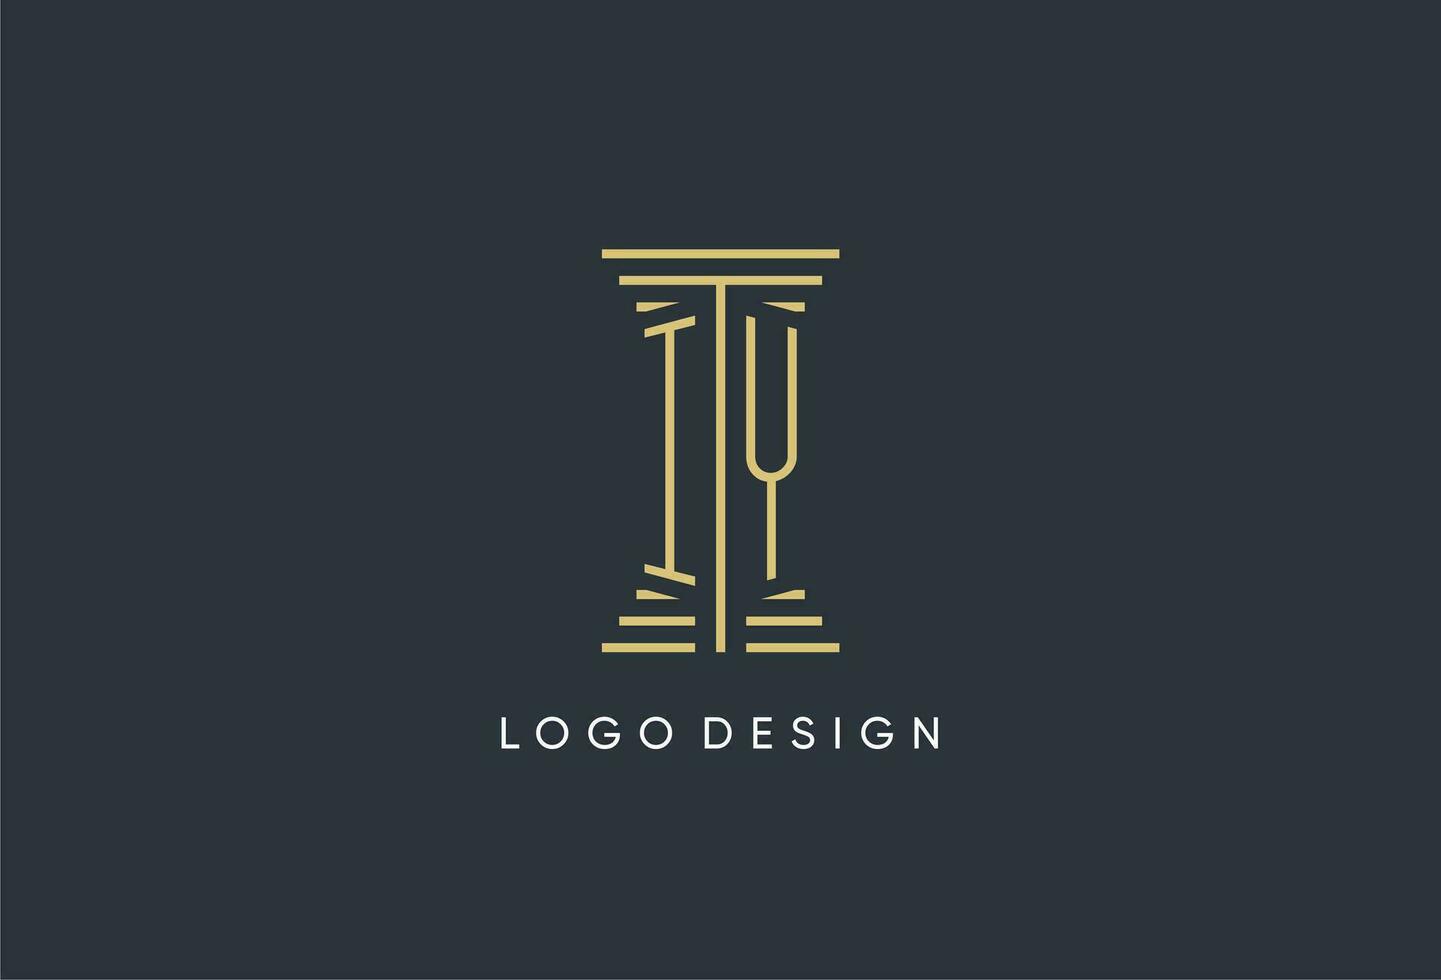 iy Initiale Monogramm mit Säule gestalten Logo Design vektor